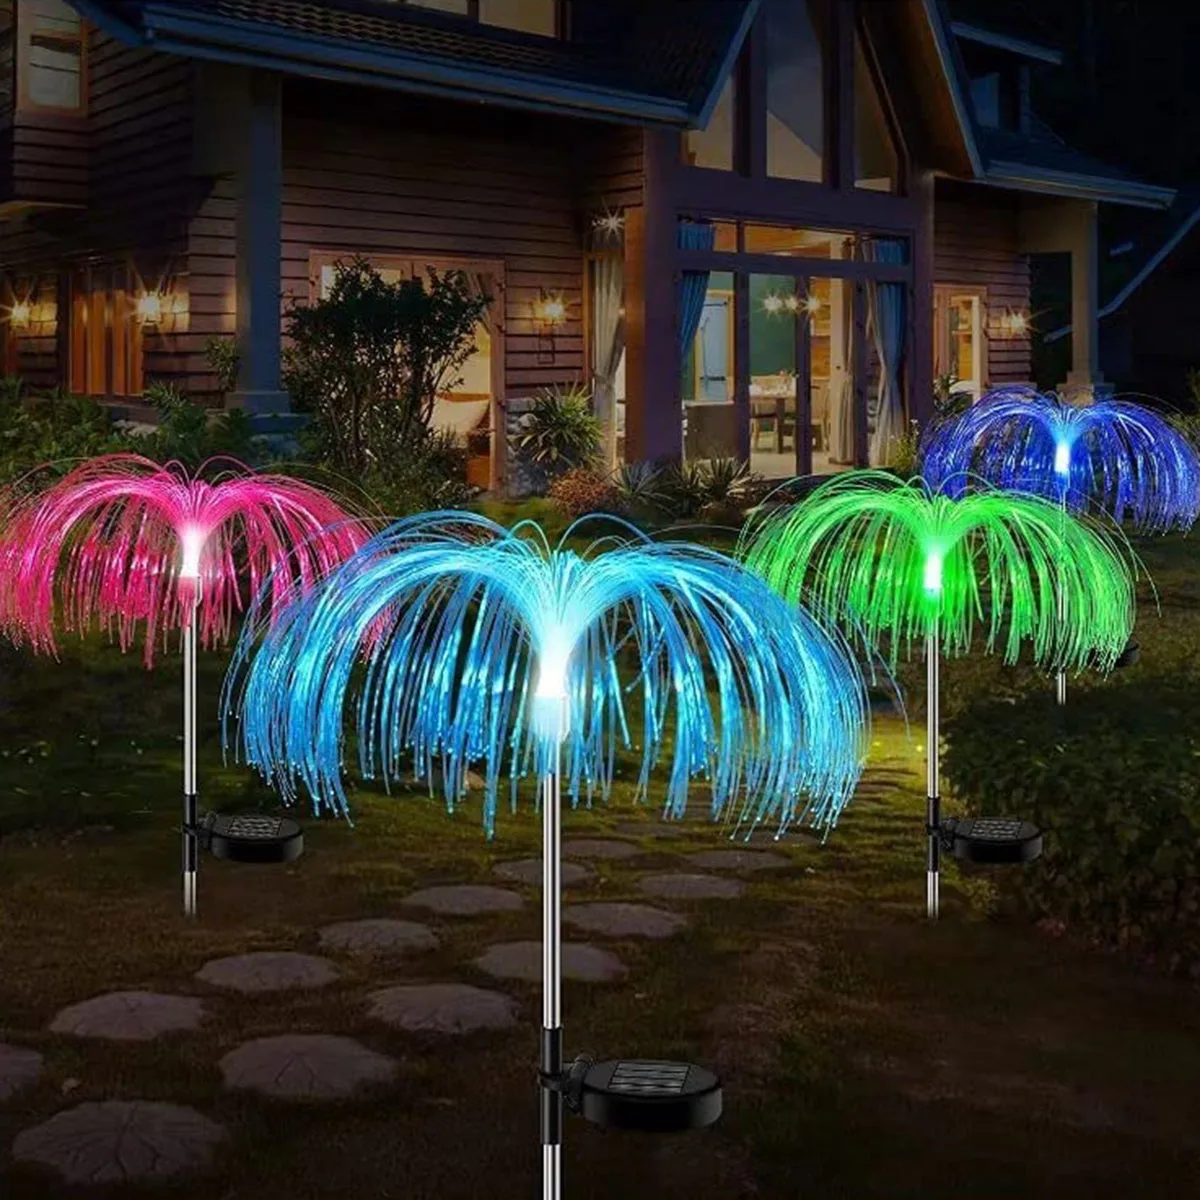 

2022 усовершенствованный садовый светильник на солнечной батарее, водонепроницаемый, уличный, меняющий цвет, декоративный светильник для ме...